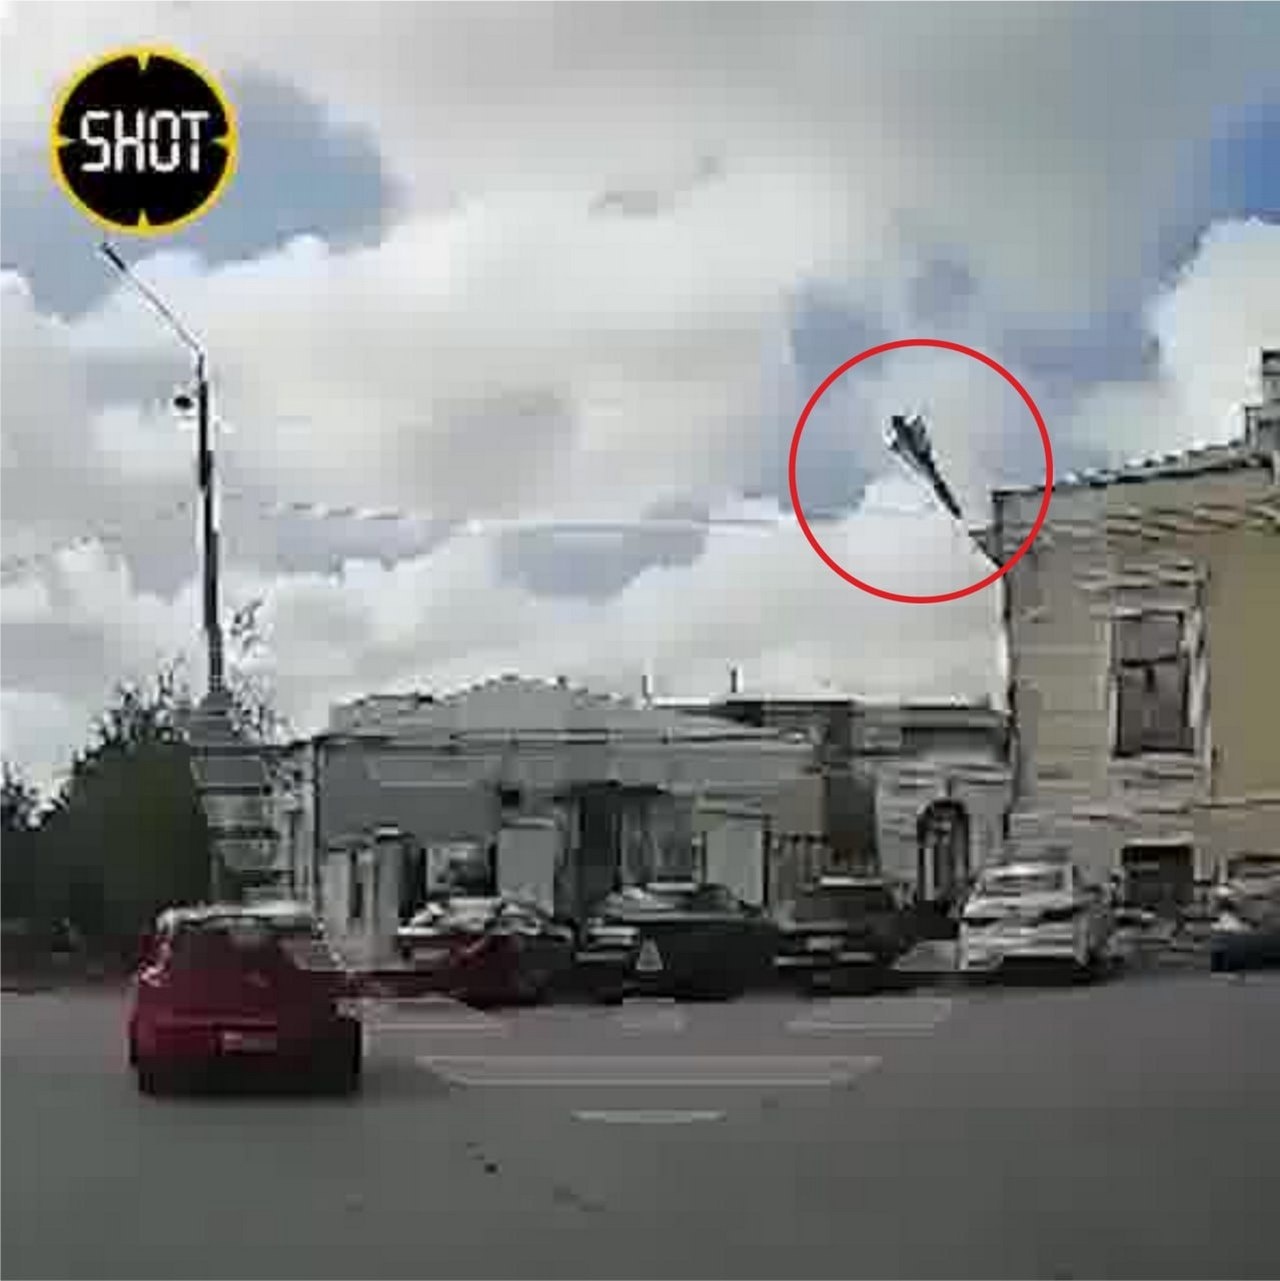 Момент прилёта ракеты 5В21 в Таганроге. Кадр с автомобильного видеорегистратора.